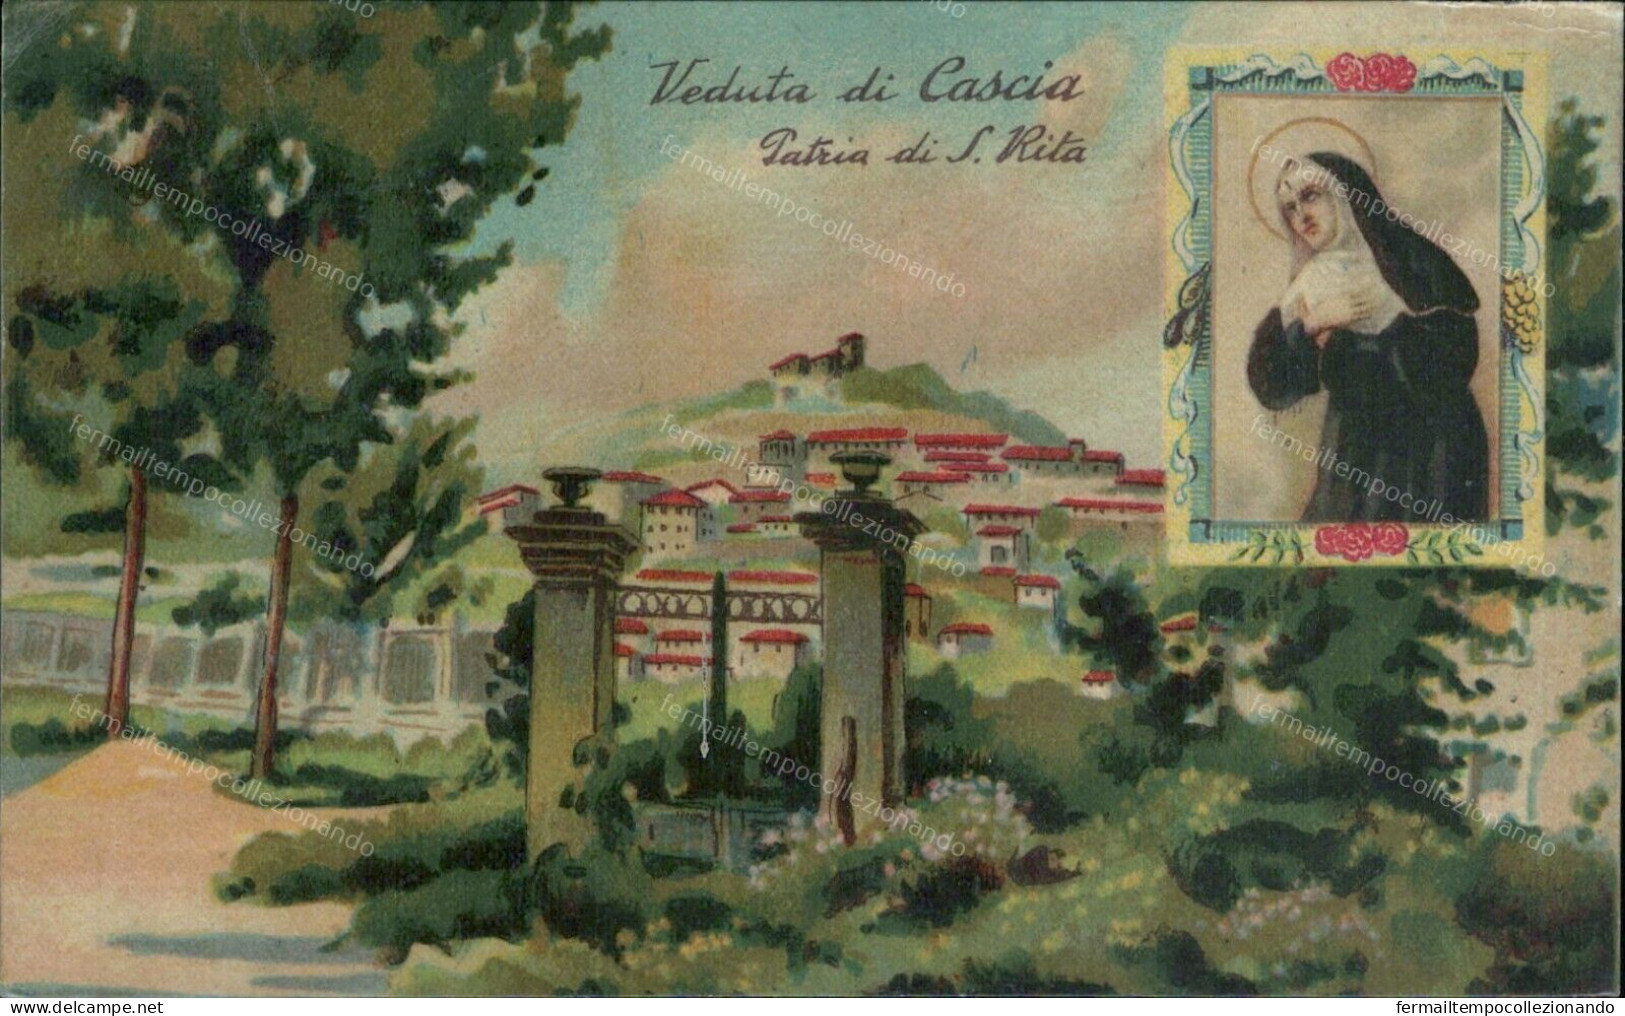 Cs496 Cartolina Veduta Di Cascia Patria Di S.rita Provincia Di Perugia - Perugia